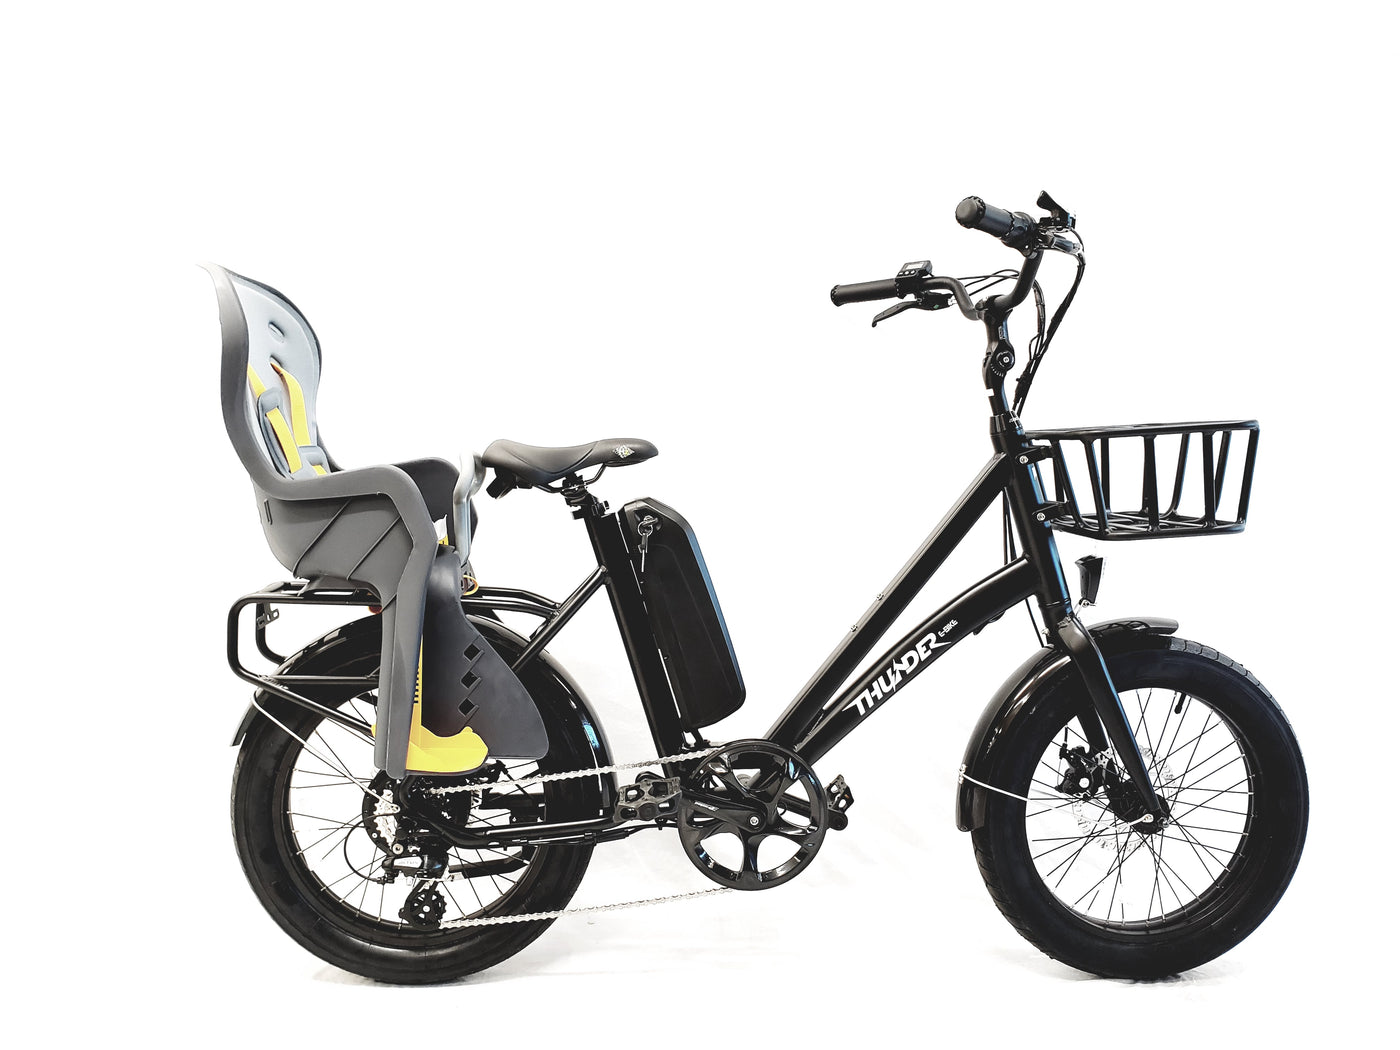 Toddler Bike seat - Universal fit